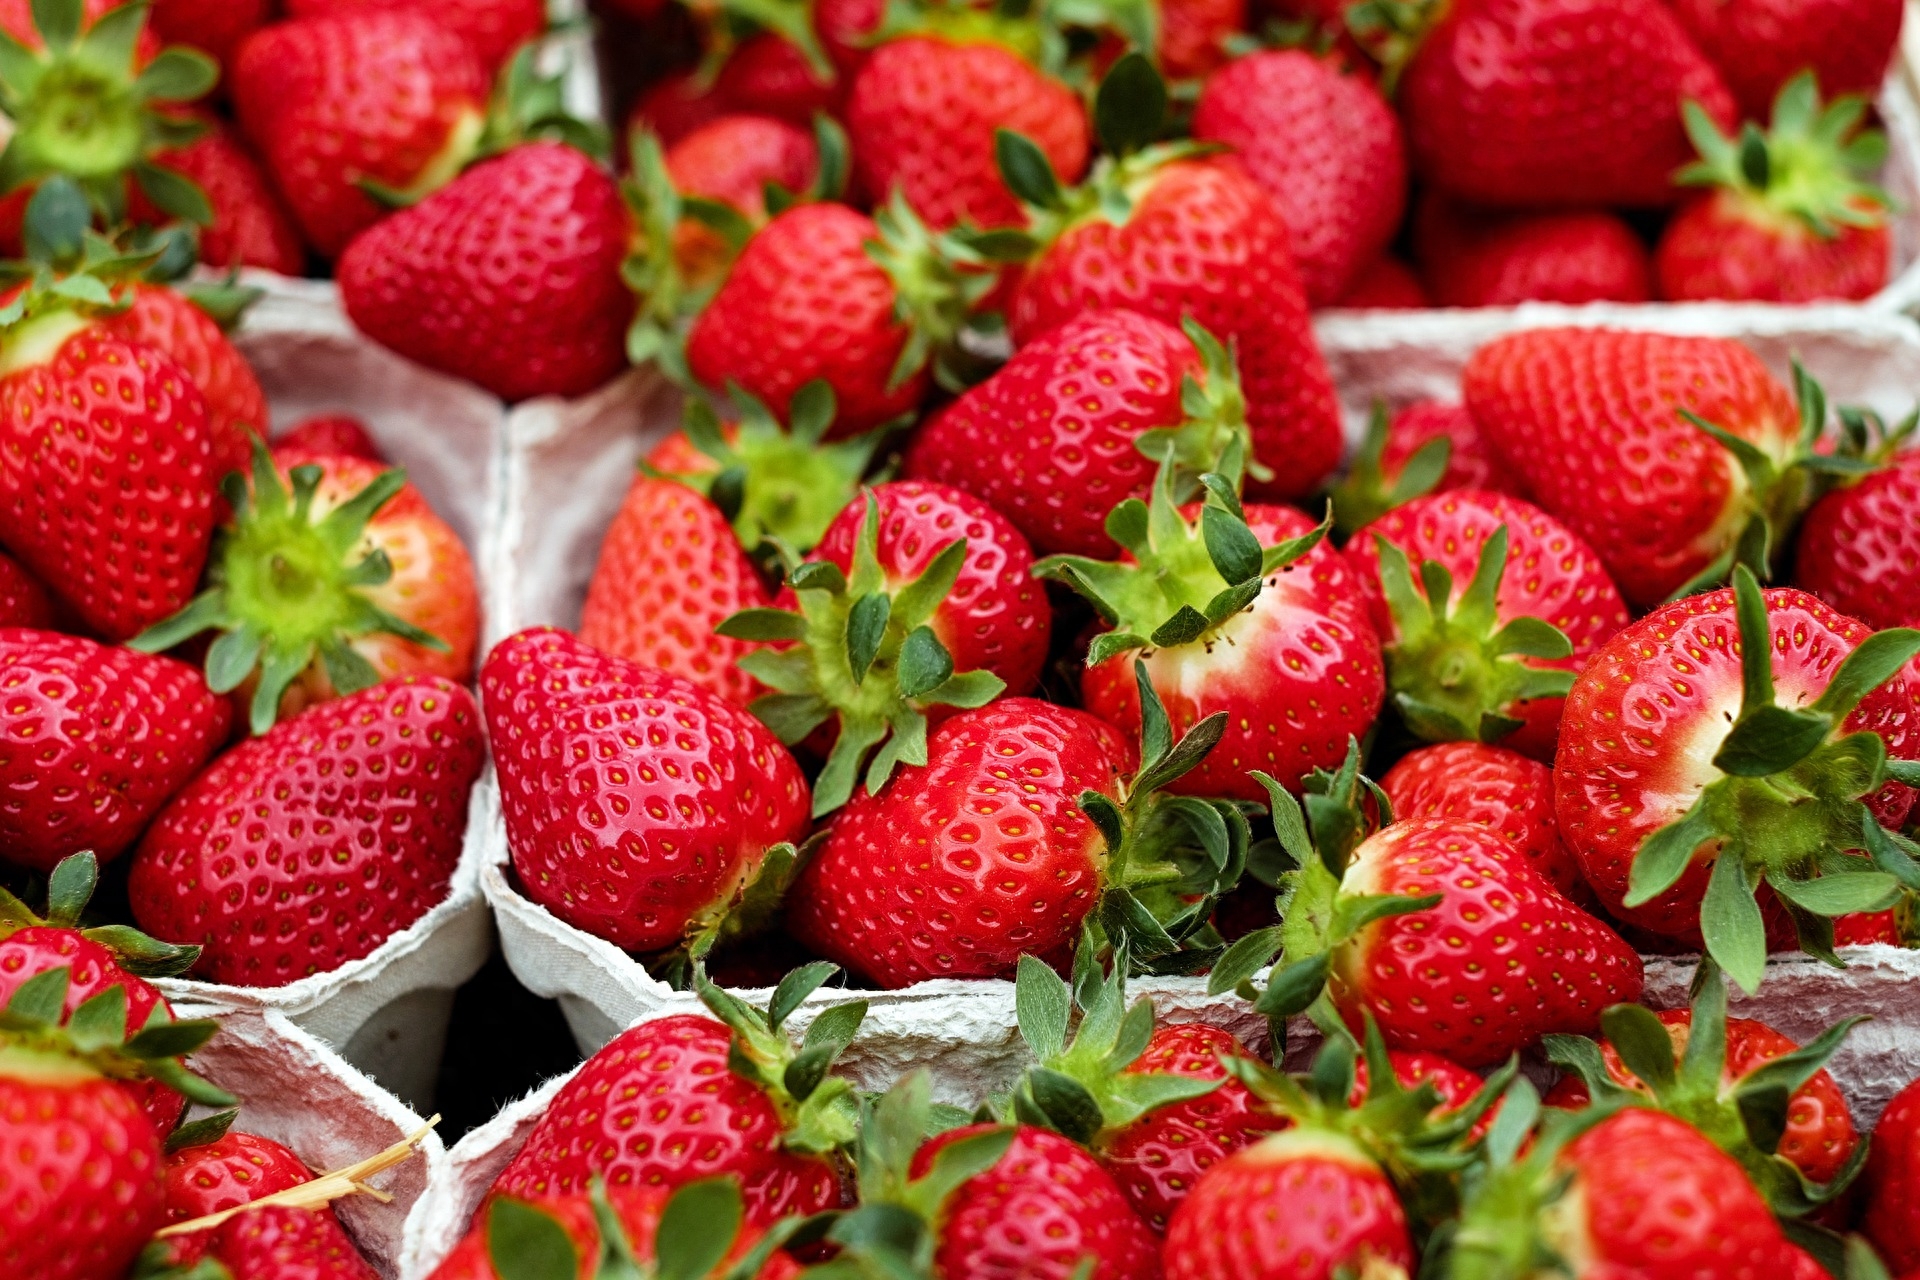 又到了草莓的季节了~甜美多汁的草莓真是让人无法抗拒啊~在这个充斥着草莓香的季节，我们就来聊聊草莓的那些事吧！草莓属于蔷薇科的草莓属植物。一个看起来普普通通的草莓里面含